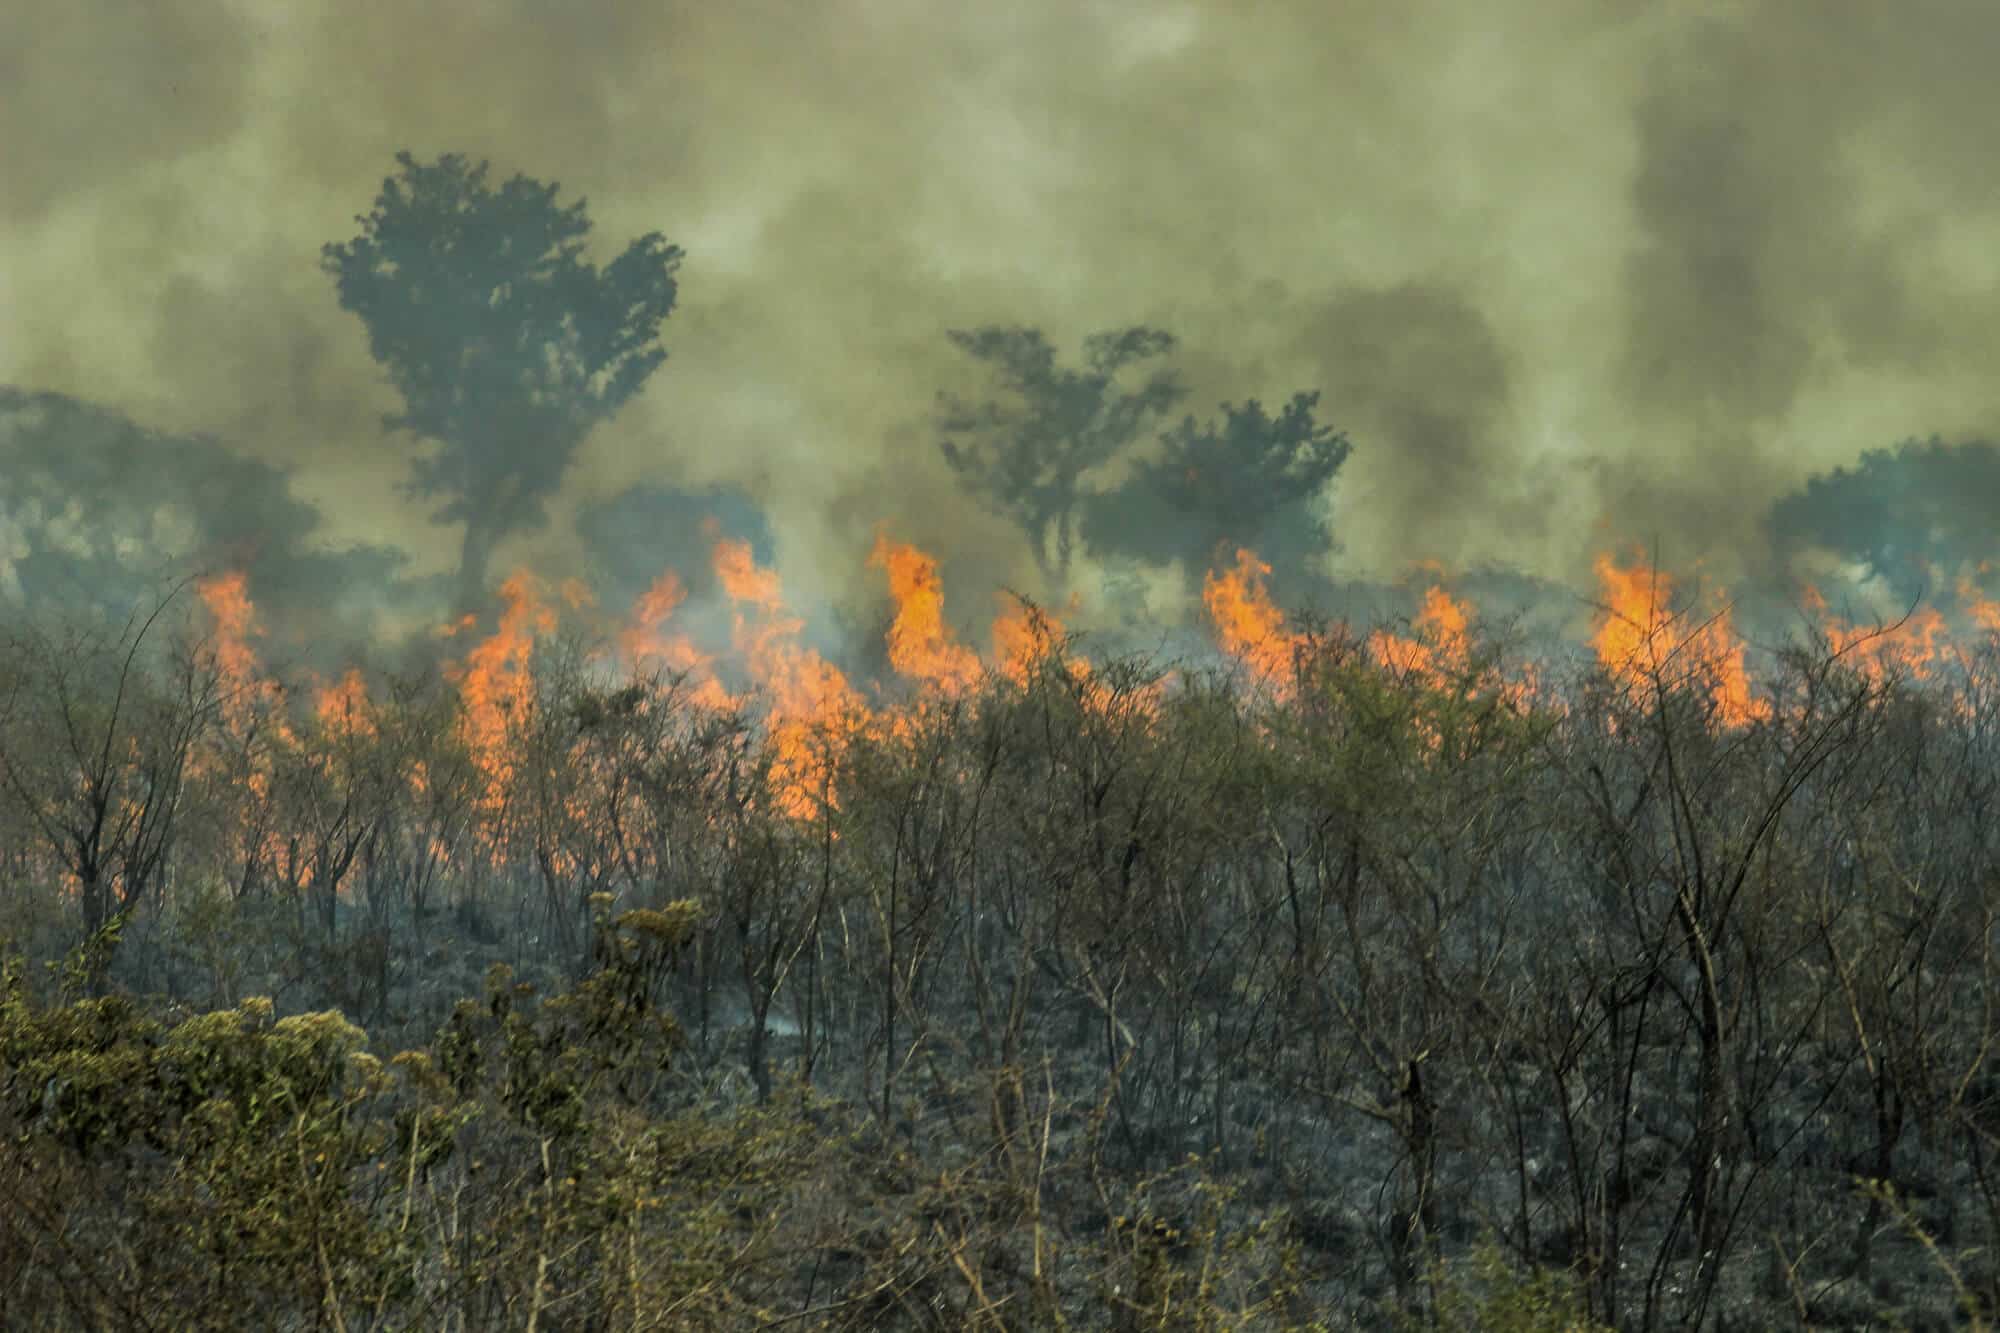 الحرائق في غابات الأمازون المطيرة. الصورة: موقع إيداع الصور.com